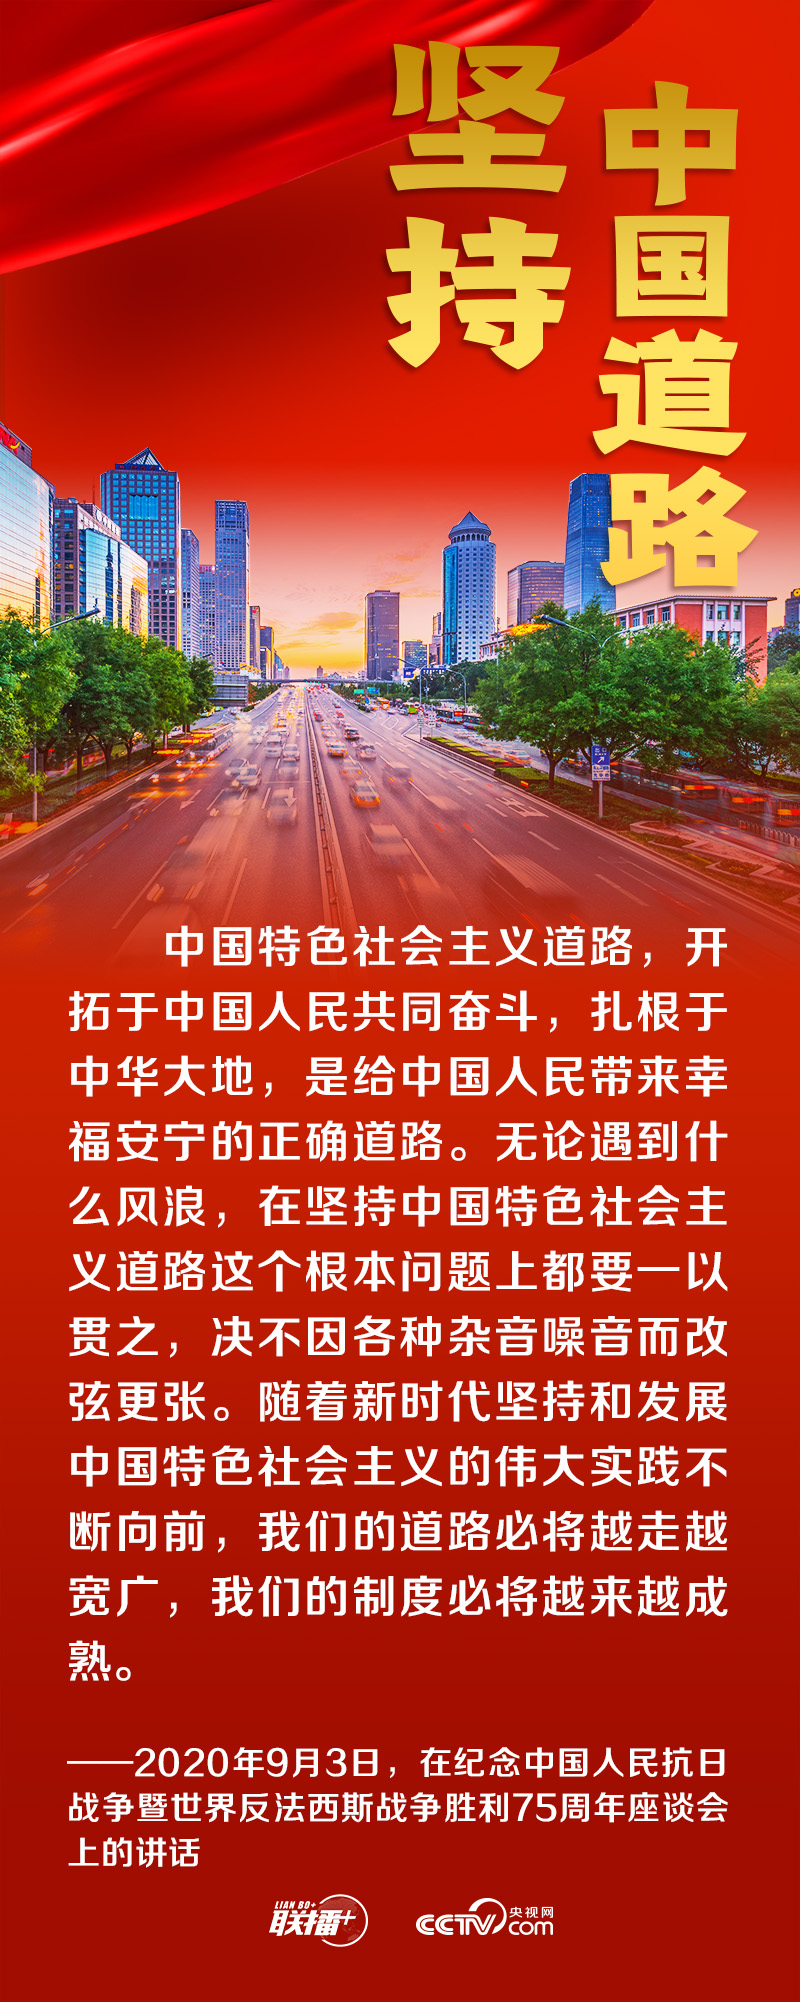 联播+丨跟着总书记领悟党的宝贵经验——坚持中国道路